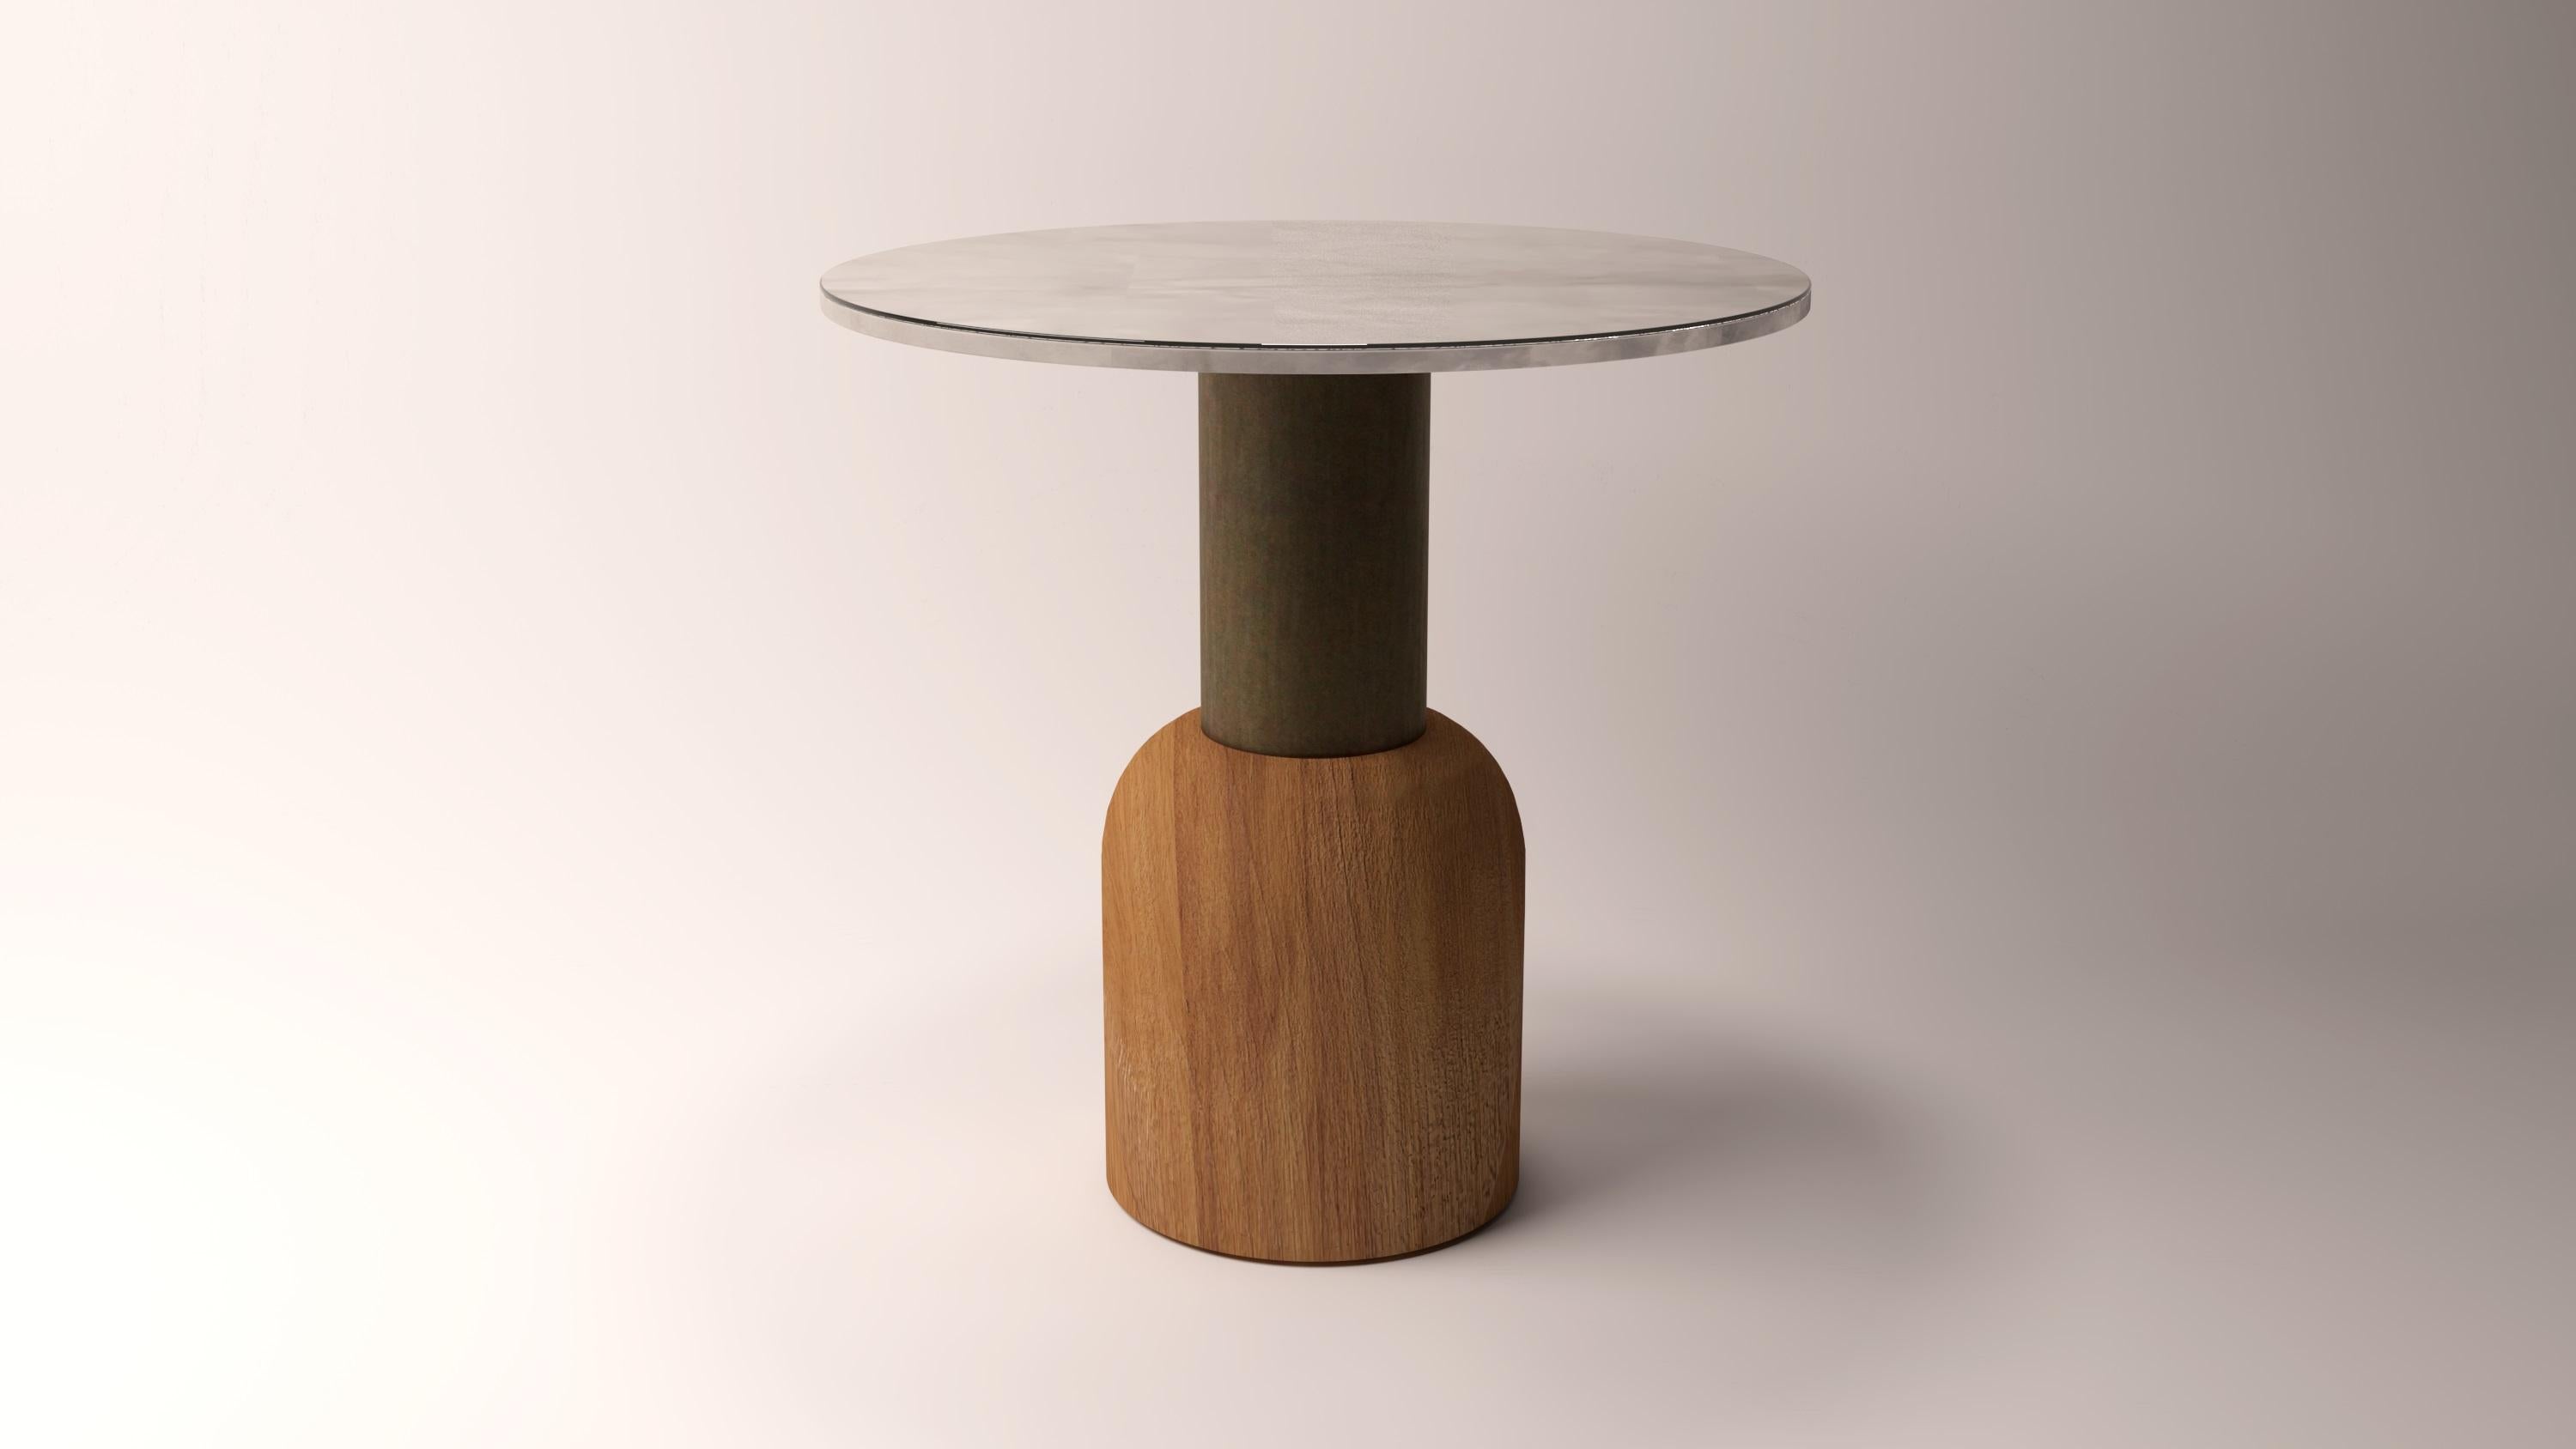 Table Serenity Fusion 50 Iroko en bois et albâtre par Alabastro Italiano
Dimensions : D 50 x H 50 cm.
MATERIAL : Albâtre blanc, bois d'Iroko, brossé bruni.
20 kg.

Disponible dans une autre taille : H 40 cm.
Disponible dans d'autres finitions